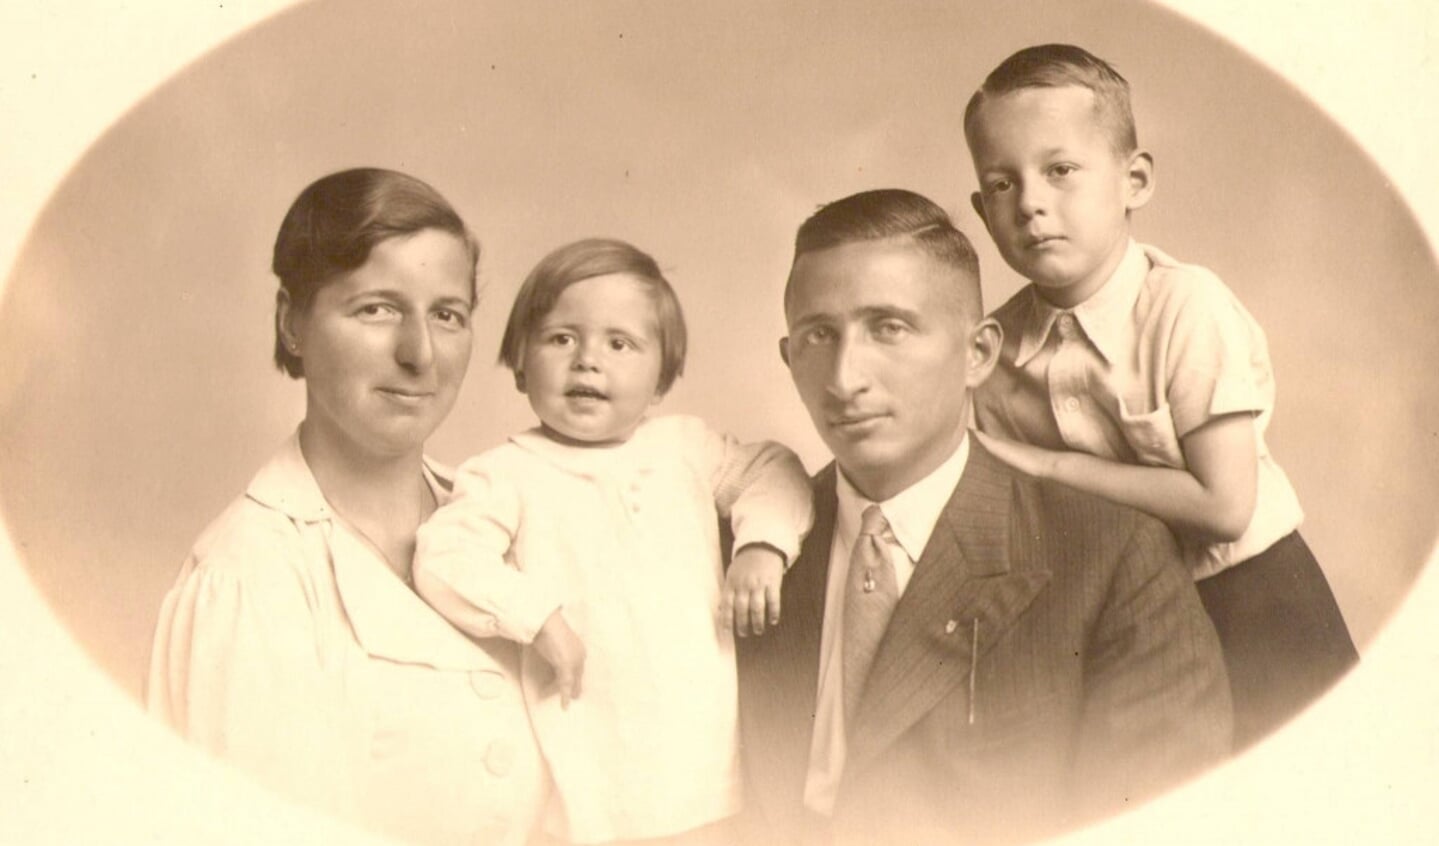  Het gezin snoep in het midden van de jaren ’30 (collectie Erven J.L. Snoep / W. de Waard).